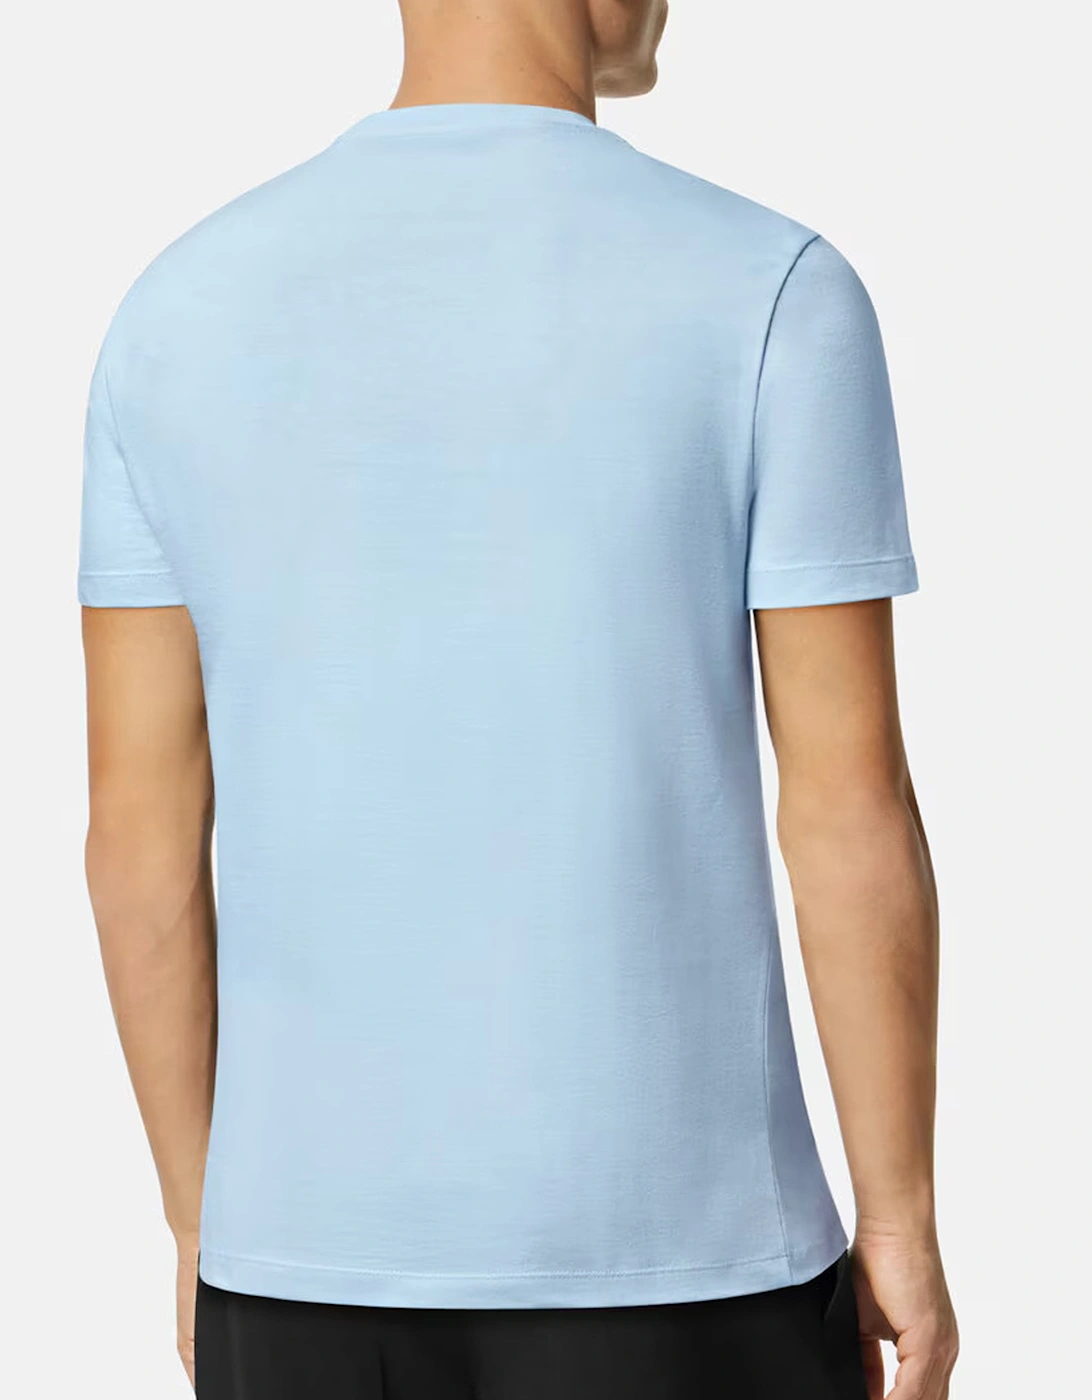 Medusa Compact Cotton T shirt Blue